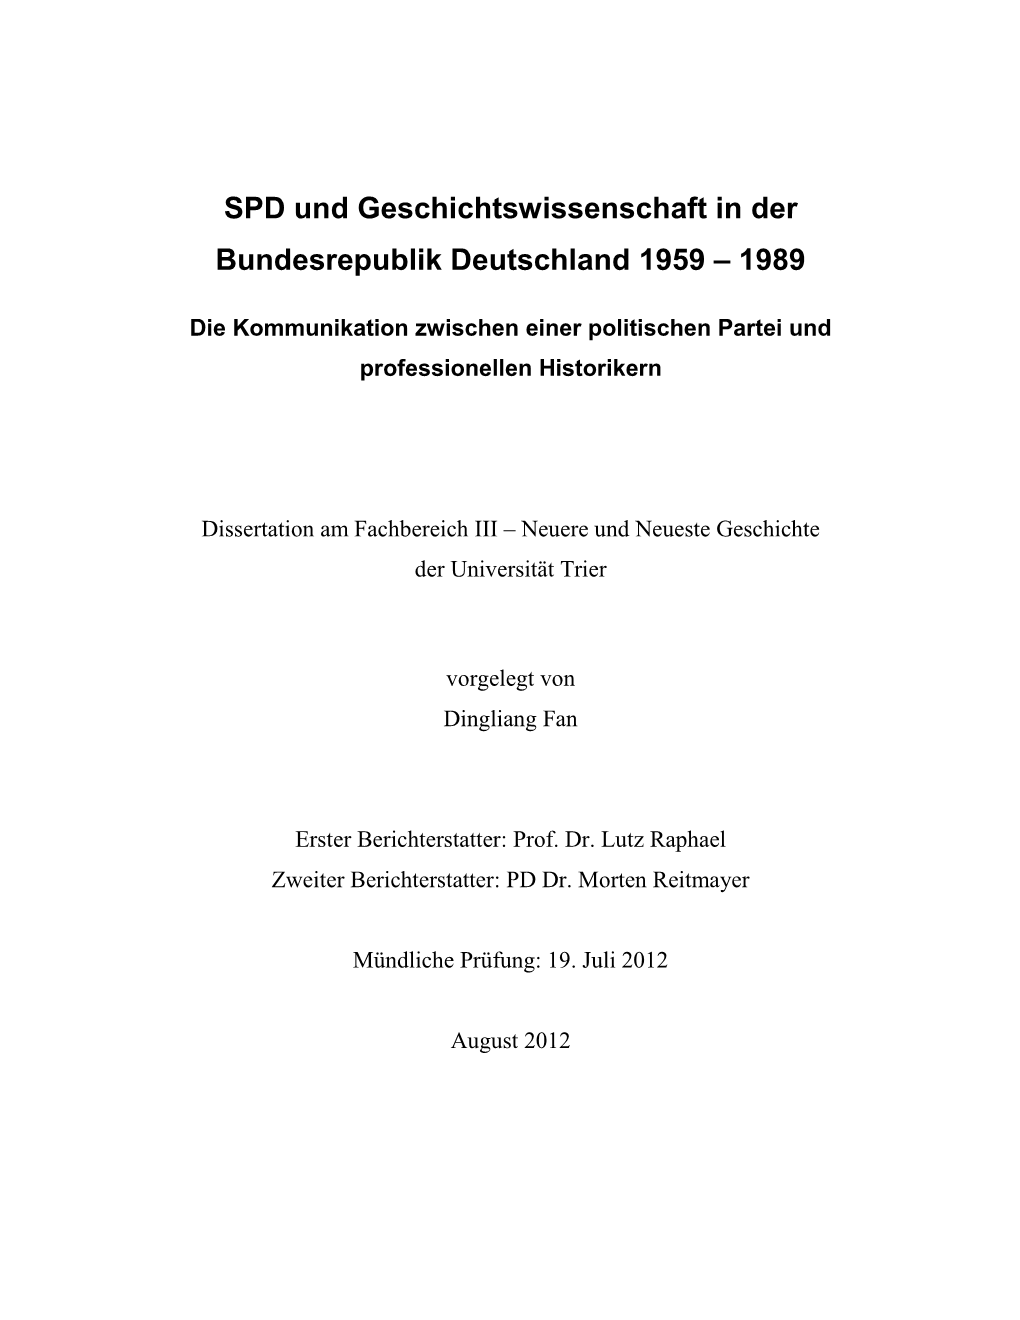 Die SPD Und Die Geschichtswissenschaft Der BRD 1959 – 1989